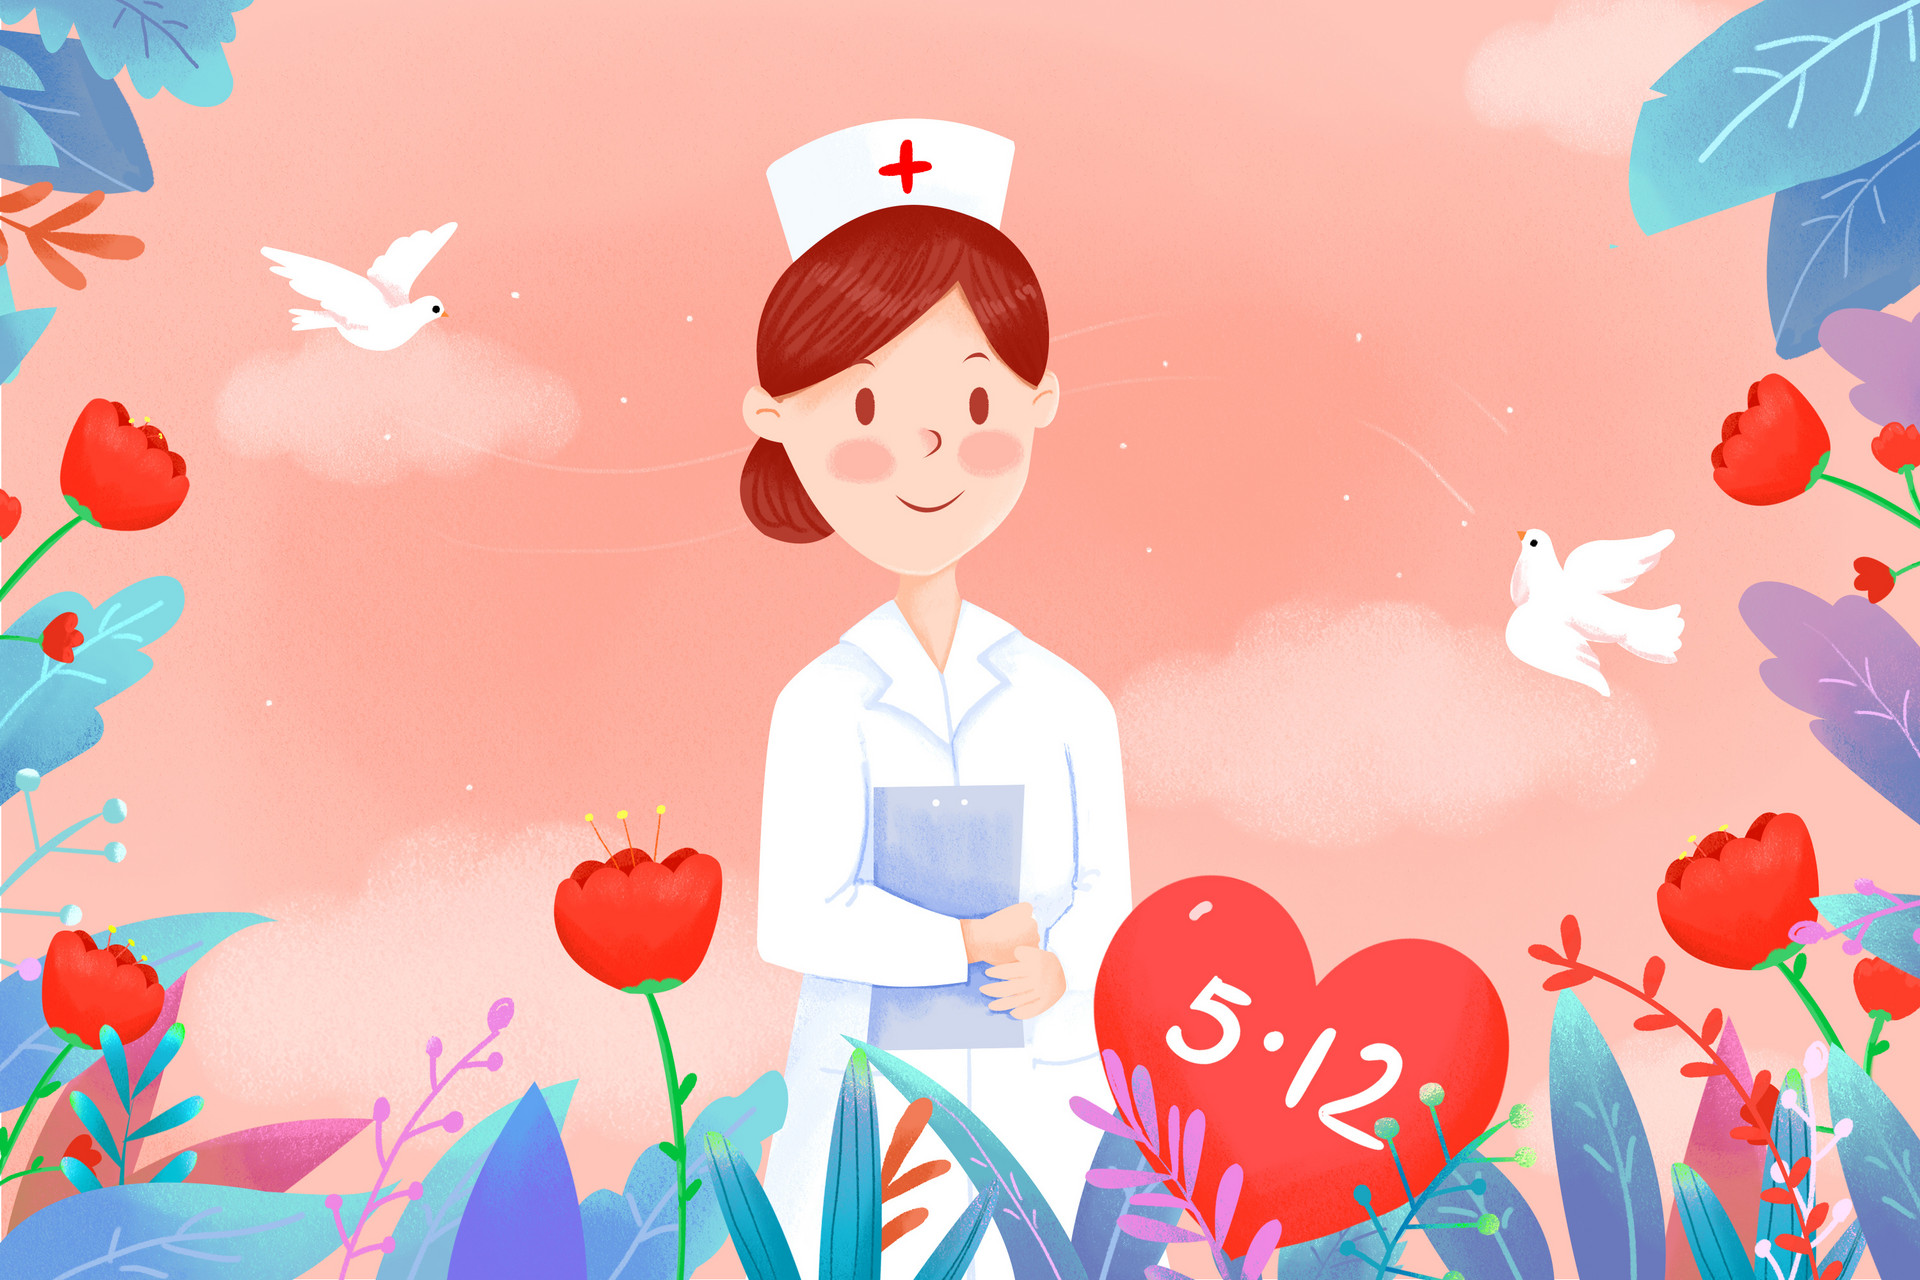 2020年护士节主题 2020年护士节活动主题3